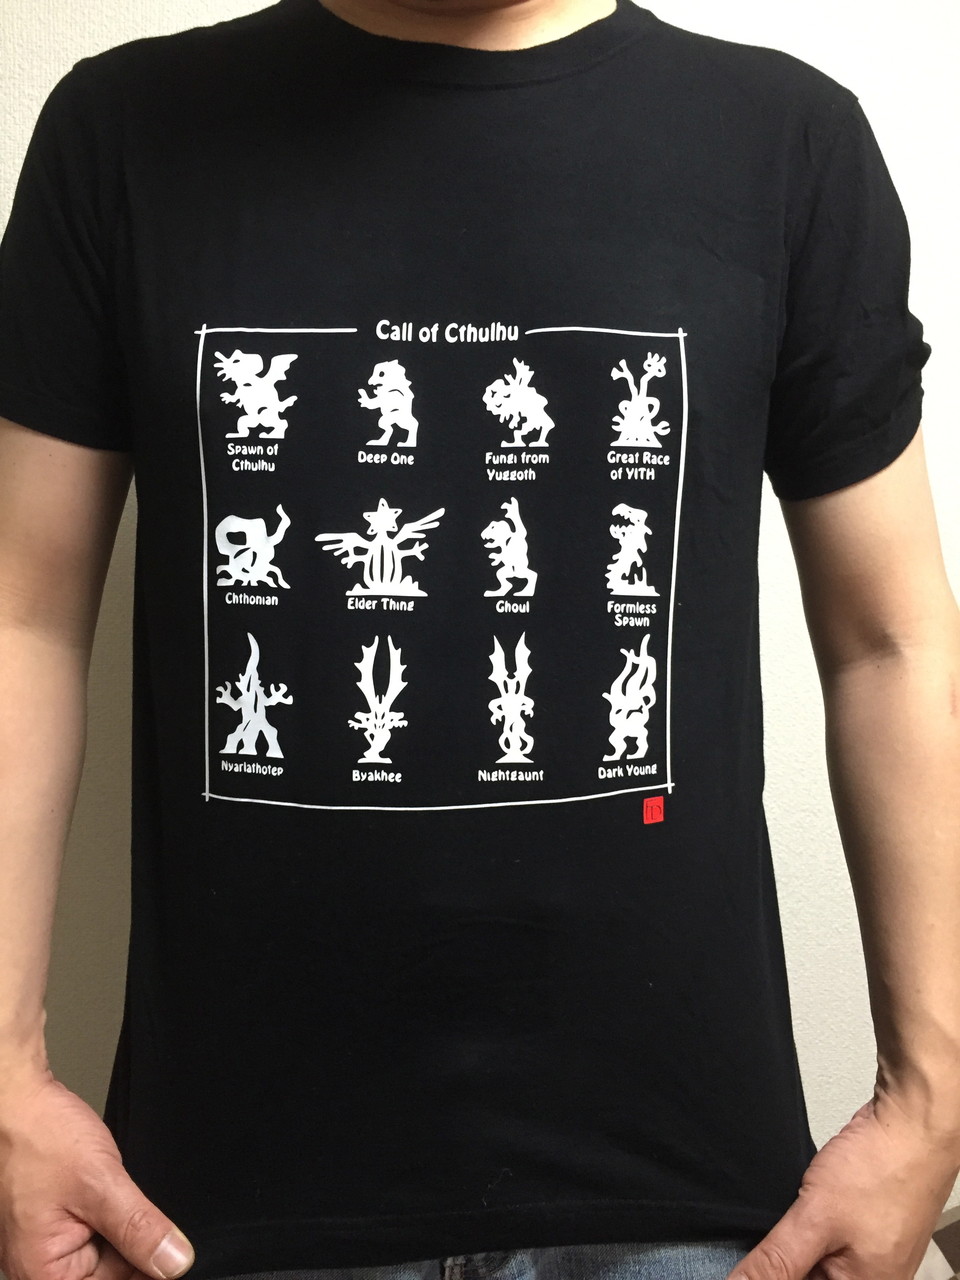 プリント/オリジナルデザインTシャツ・Creator/織田隆治